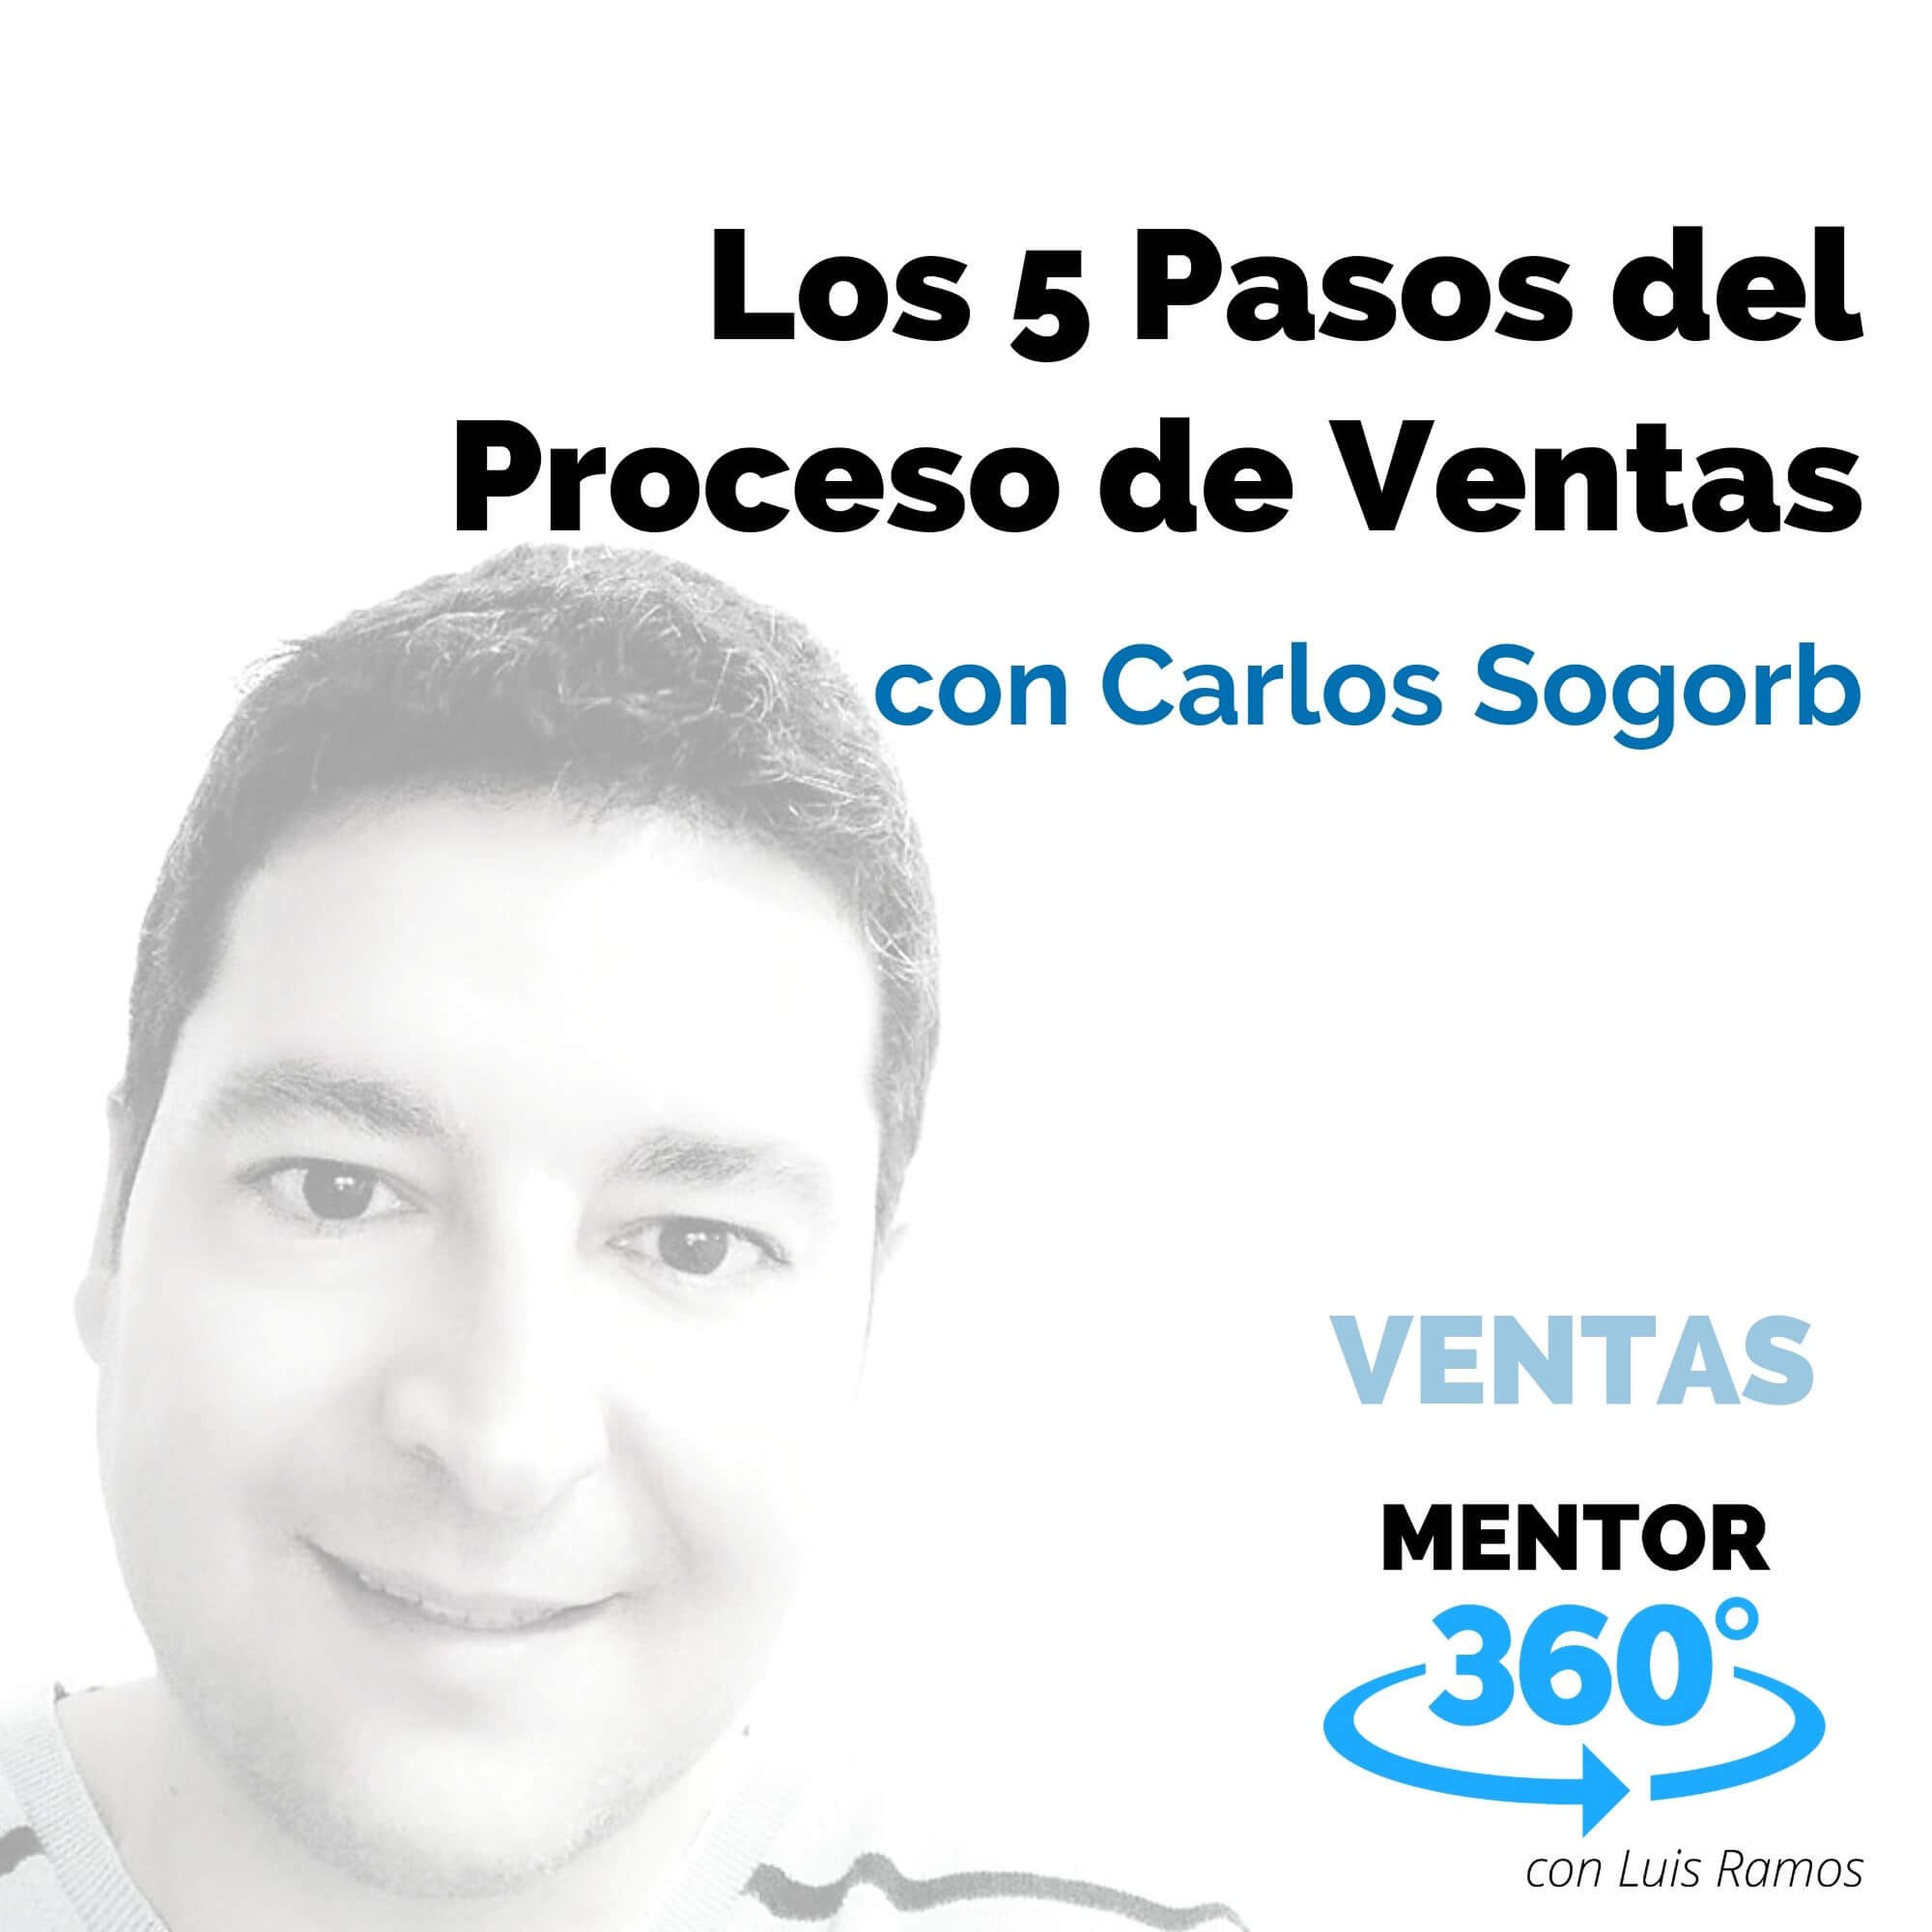 Los 5 Pasos del Proceso de Ventas, con Carlos Sogorb - VENTAS - MENTOR360